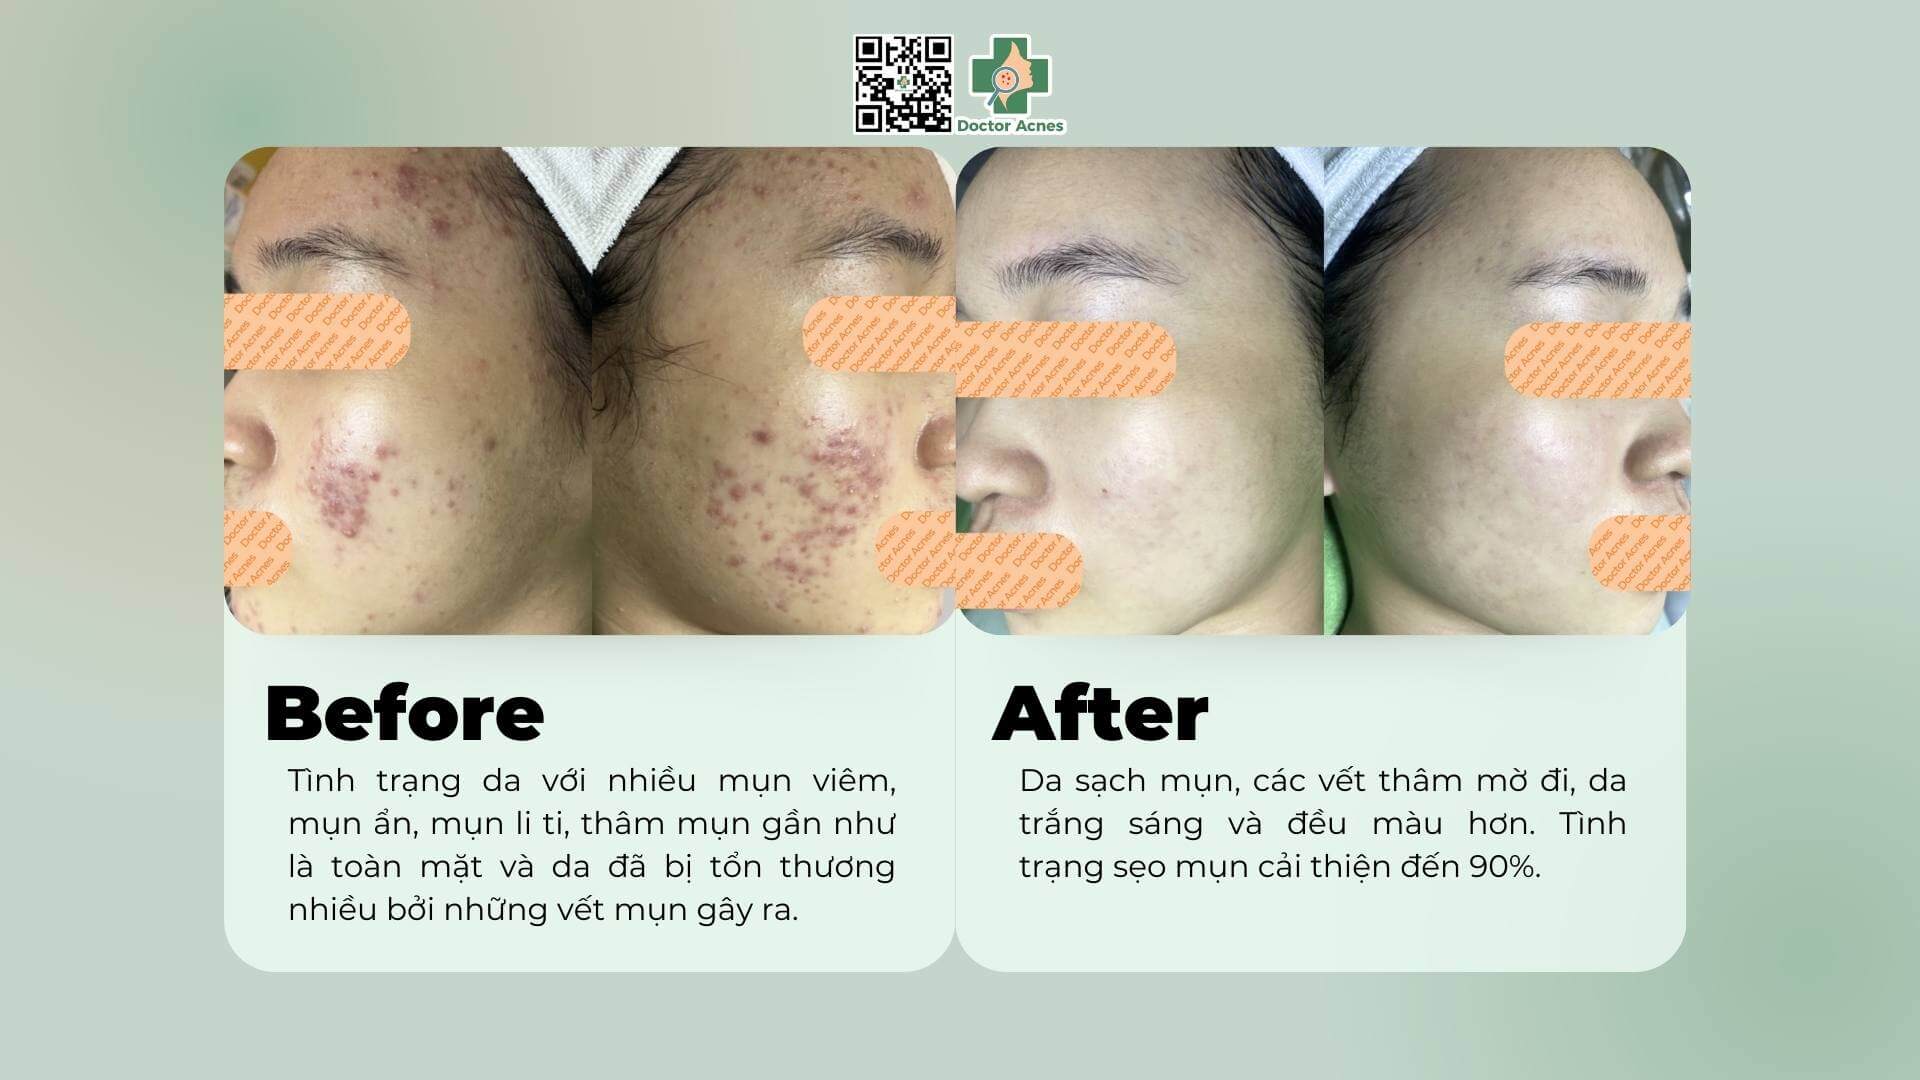 Hình ảnh trước và sau điều trị tại Doctor Acnes của bạn Hoàng Oanh